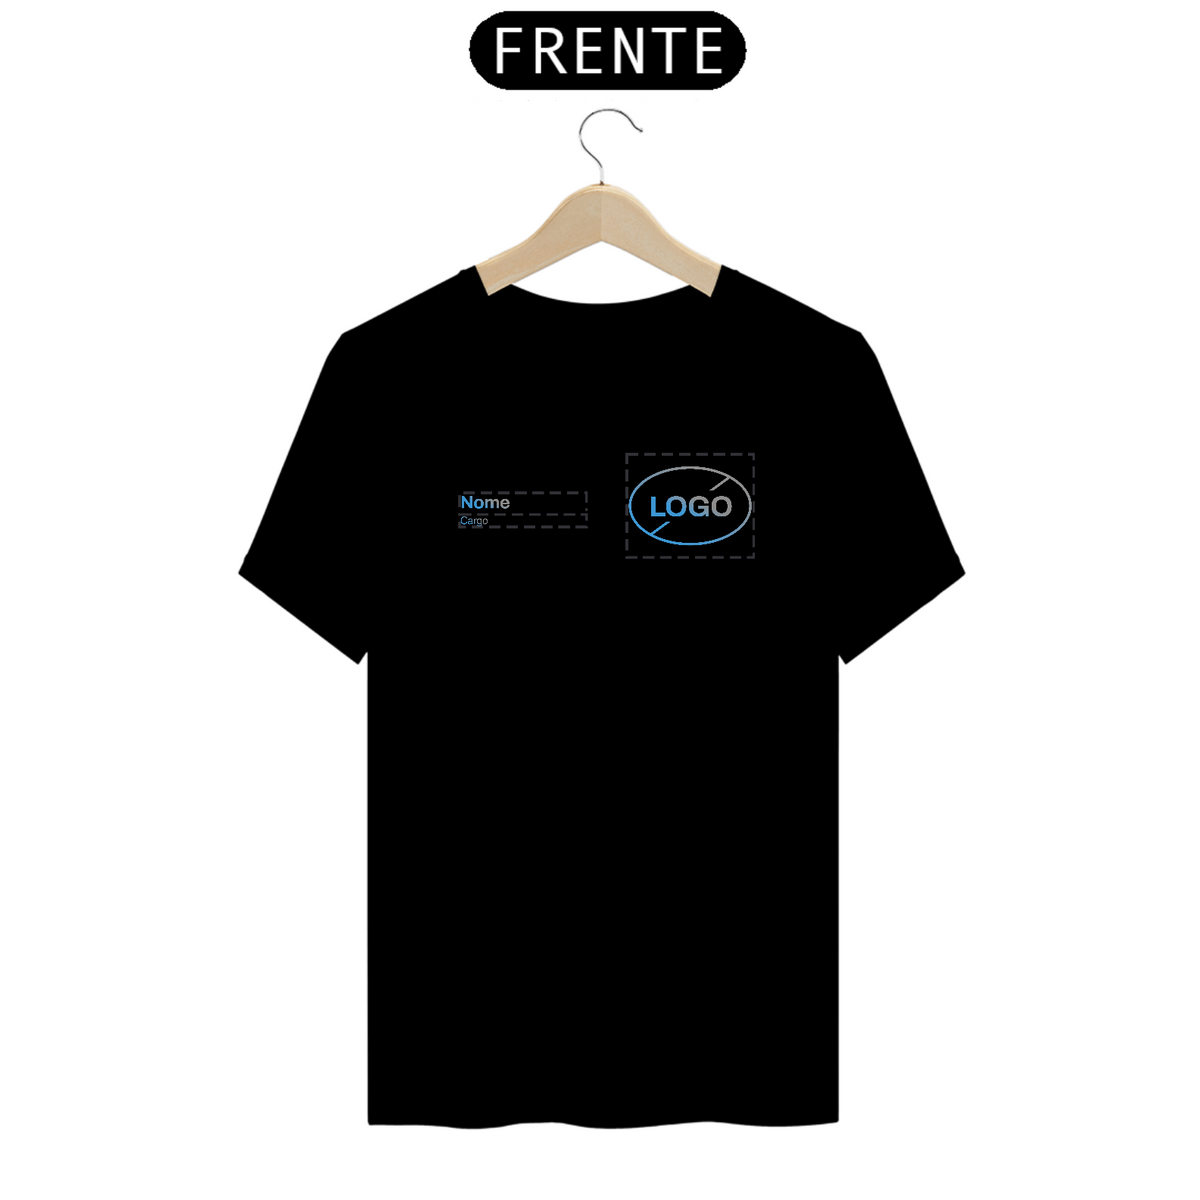 Nome do produto: T-Shirt Personalizável - Uniforme Nome + Logo + Cargo